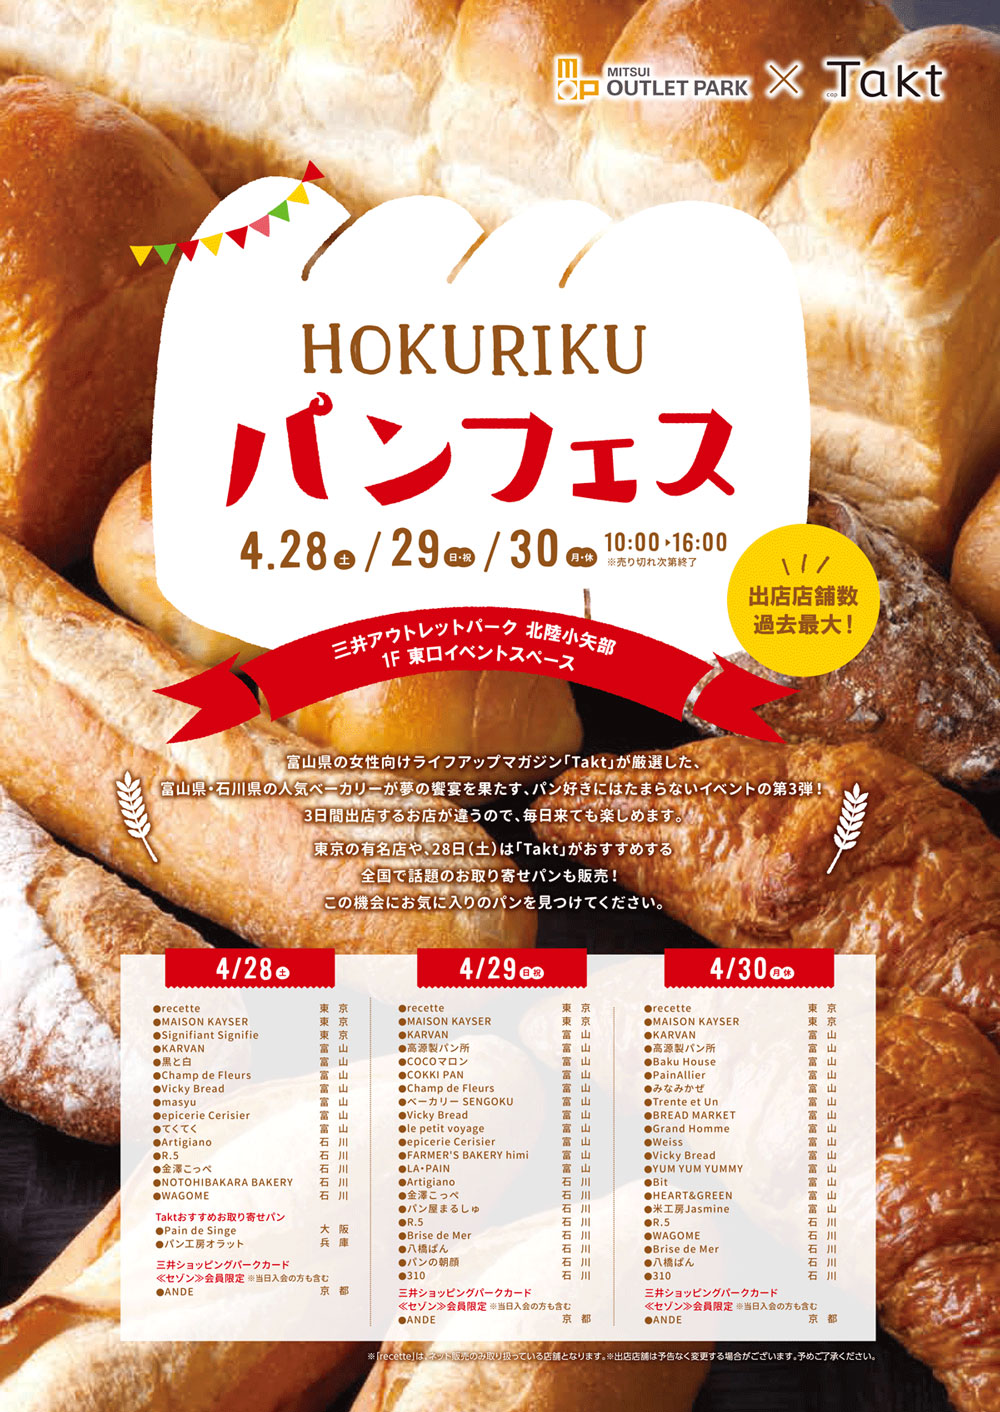 HOKURIKUパンフェス2018＠三井アウトレットパークのパンフレット